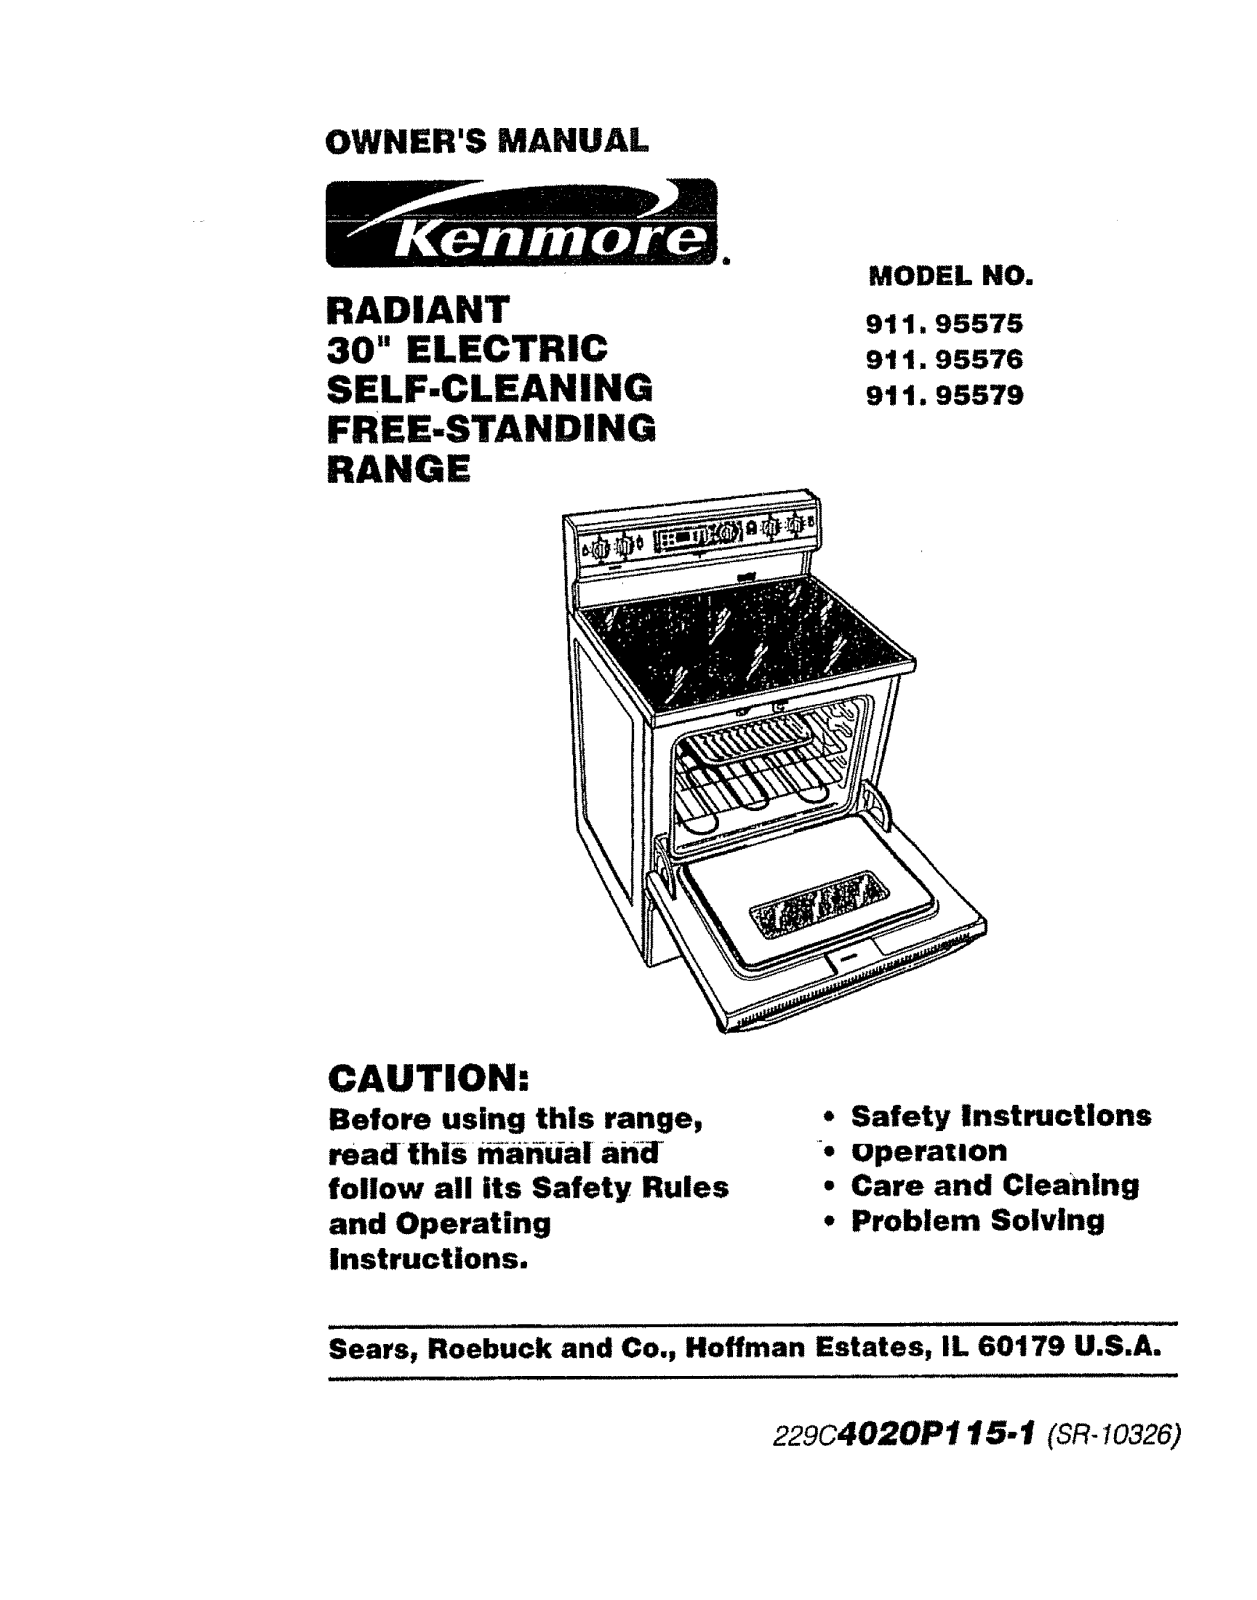 Kenmore 91195575790, 91195576790, 91195579790 Owner’s Manual